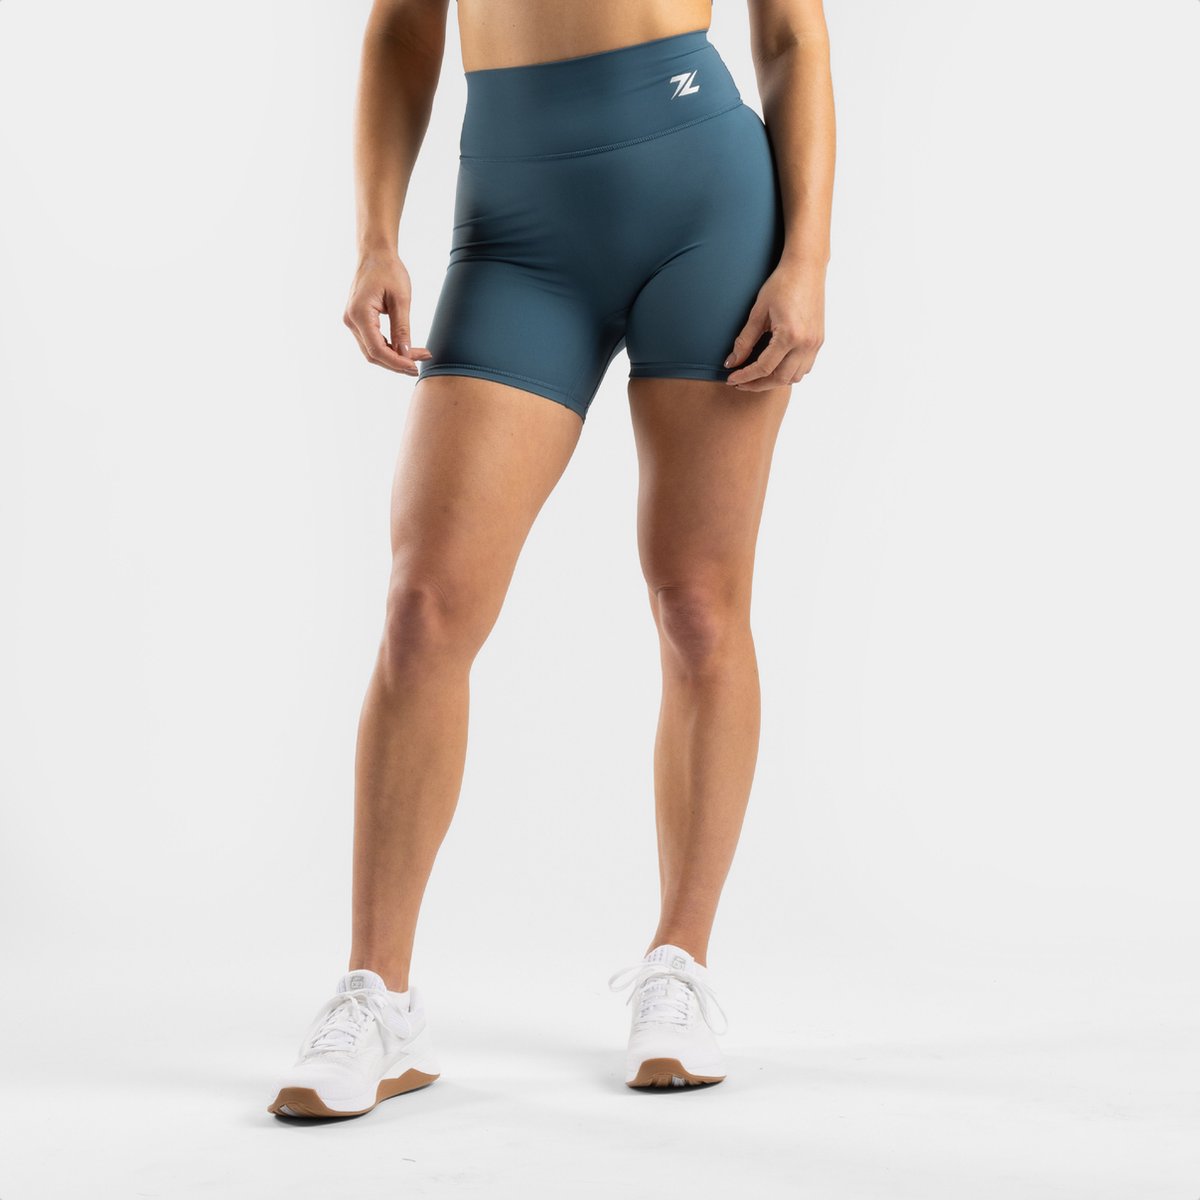 ZEUZ Korte Sport Legging Dames High Waist - Sportkleding & Sportlegging Squat Proof - Fitness & Crossfit - Hardloopbroek, Yoga Broek - 70% Nylon & 30% Elastaan - Blauw - Maat XS